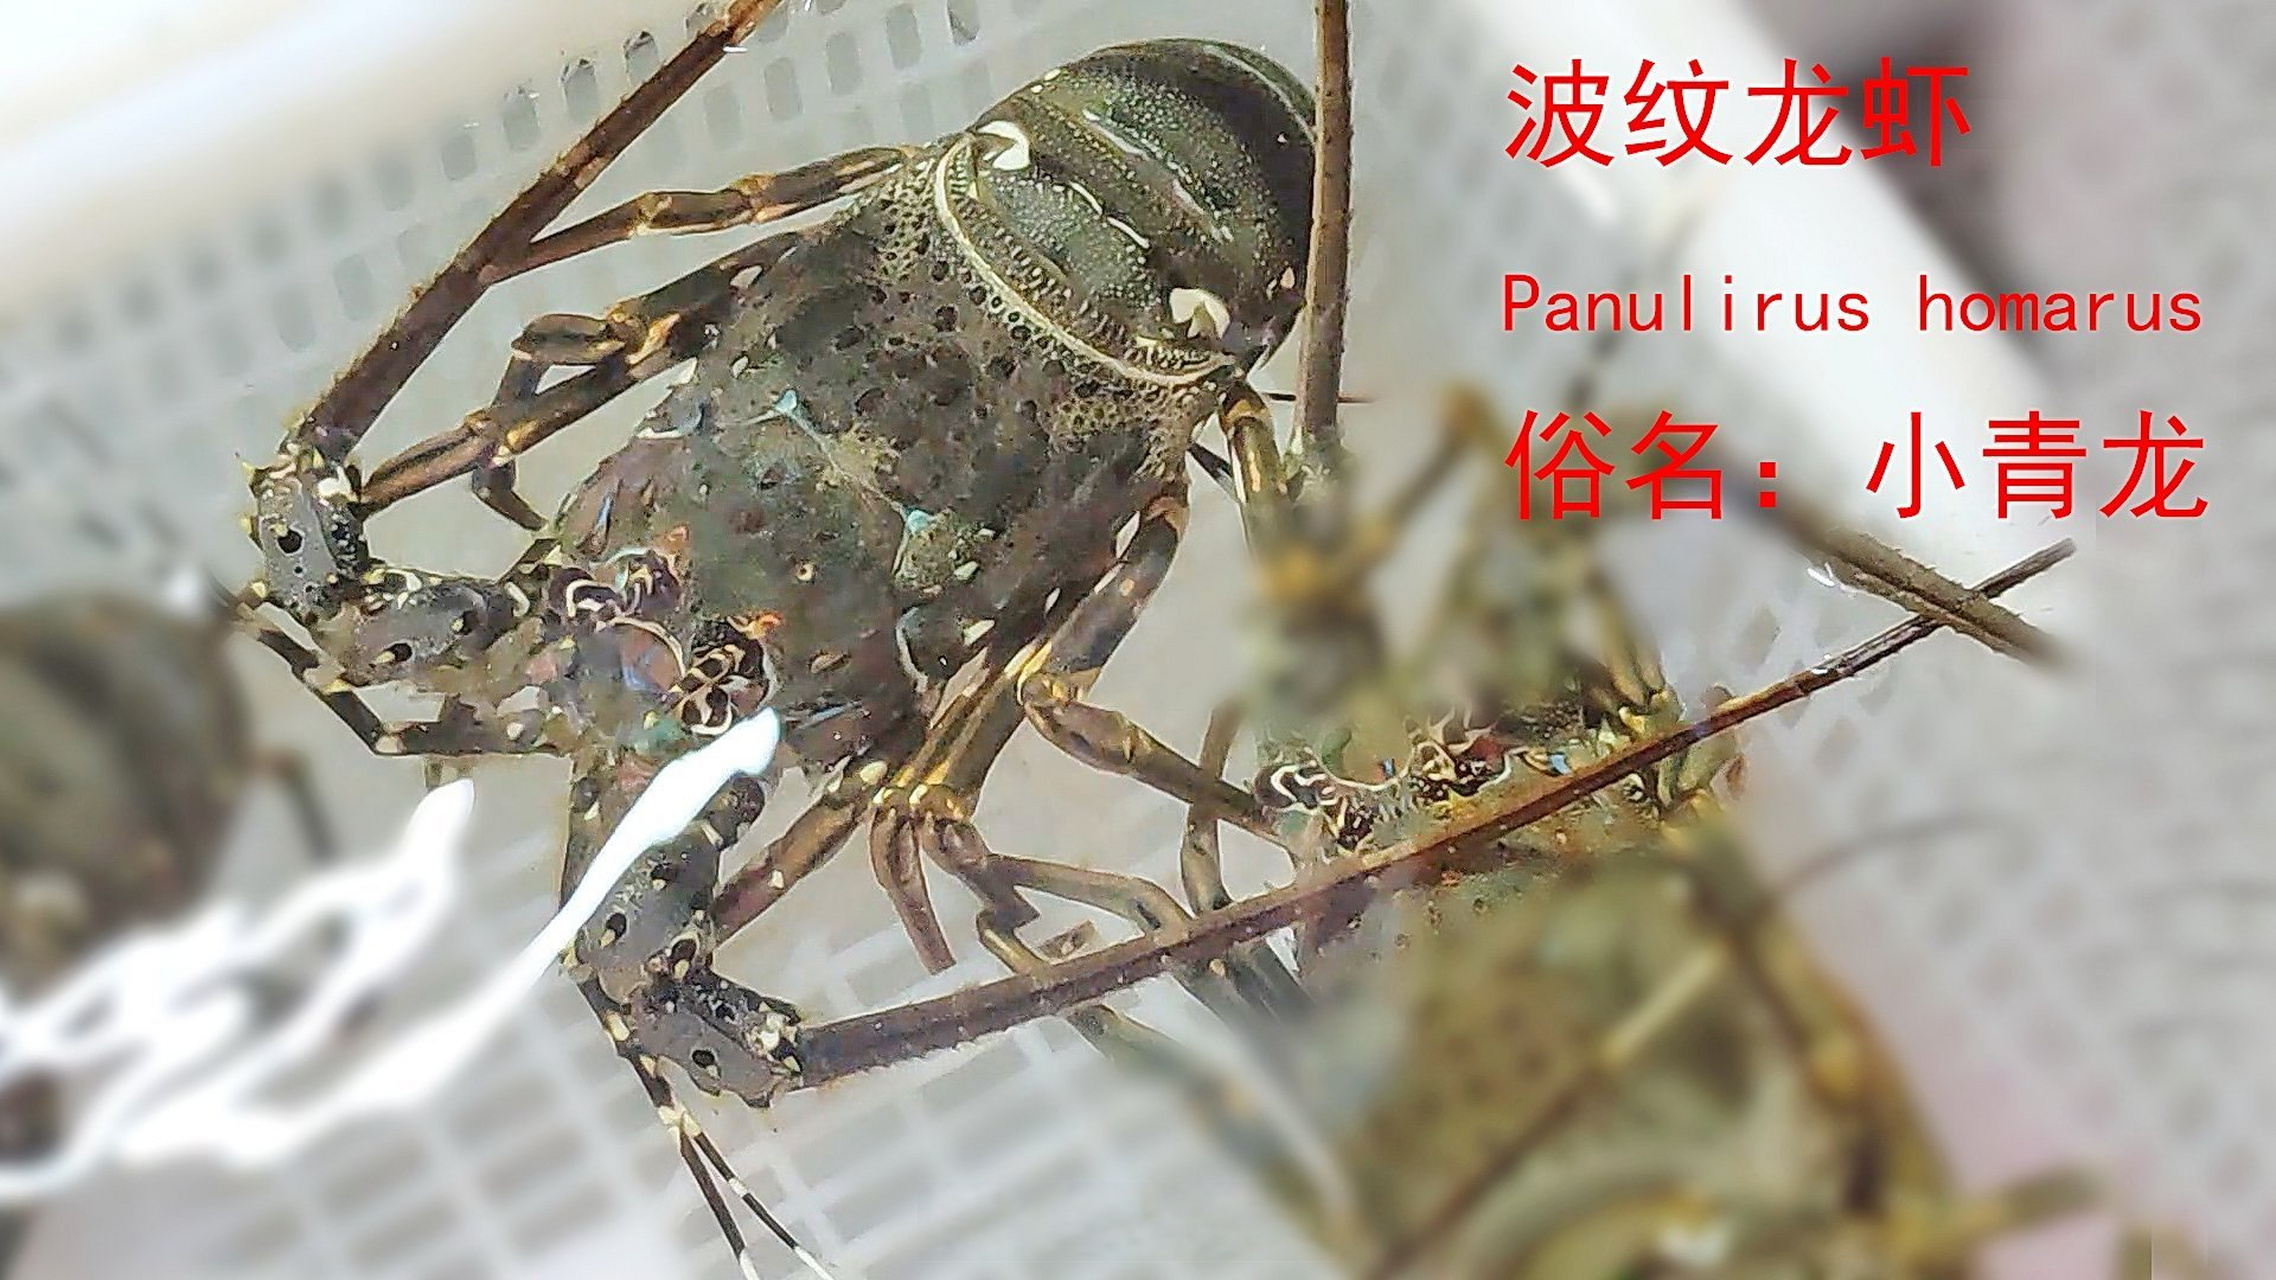 波纹龙虾/panulirus homarus,俗名小青龙